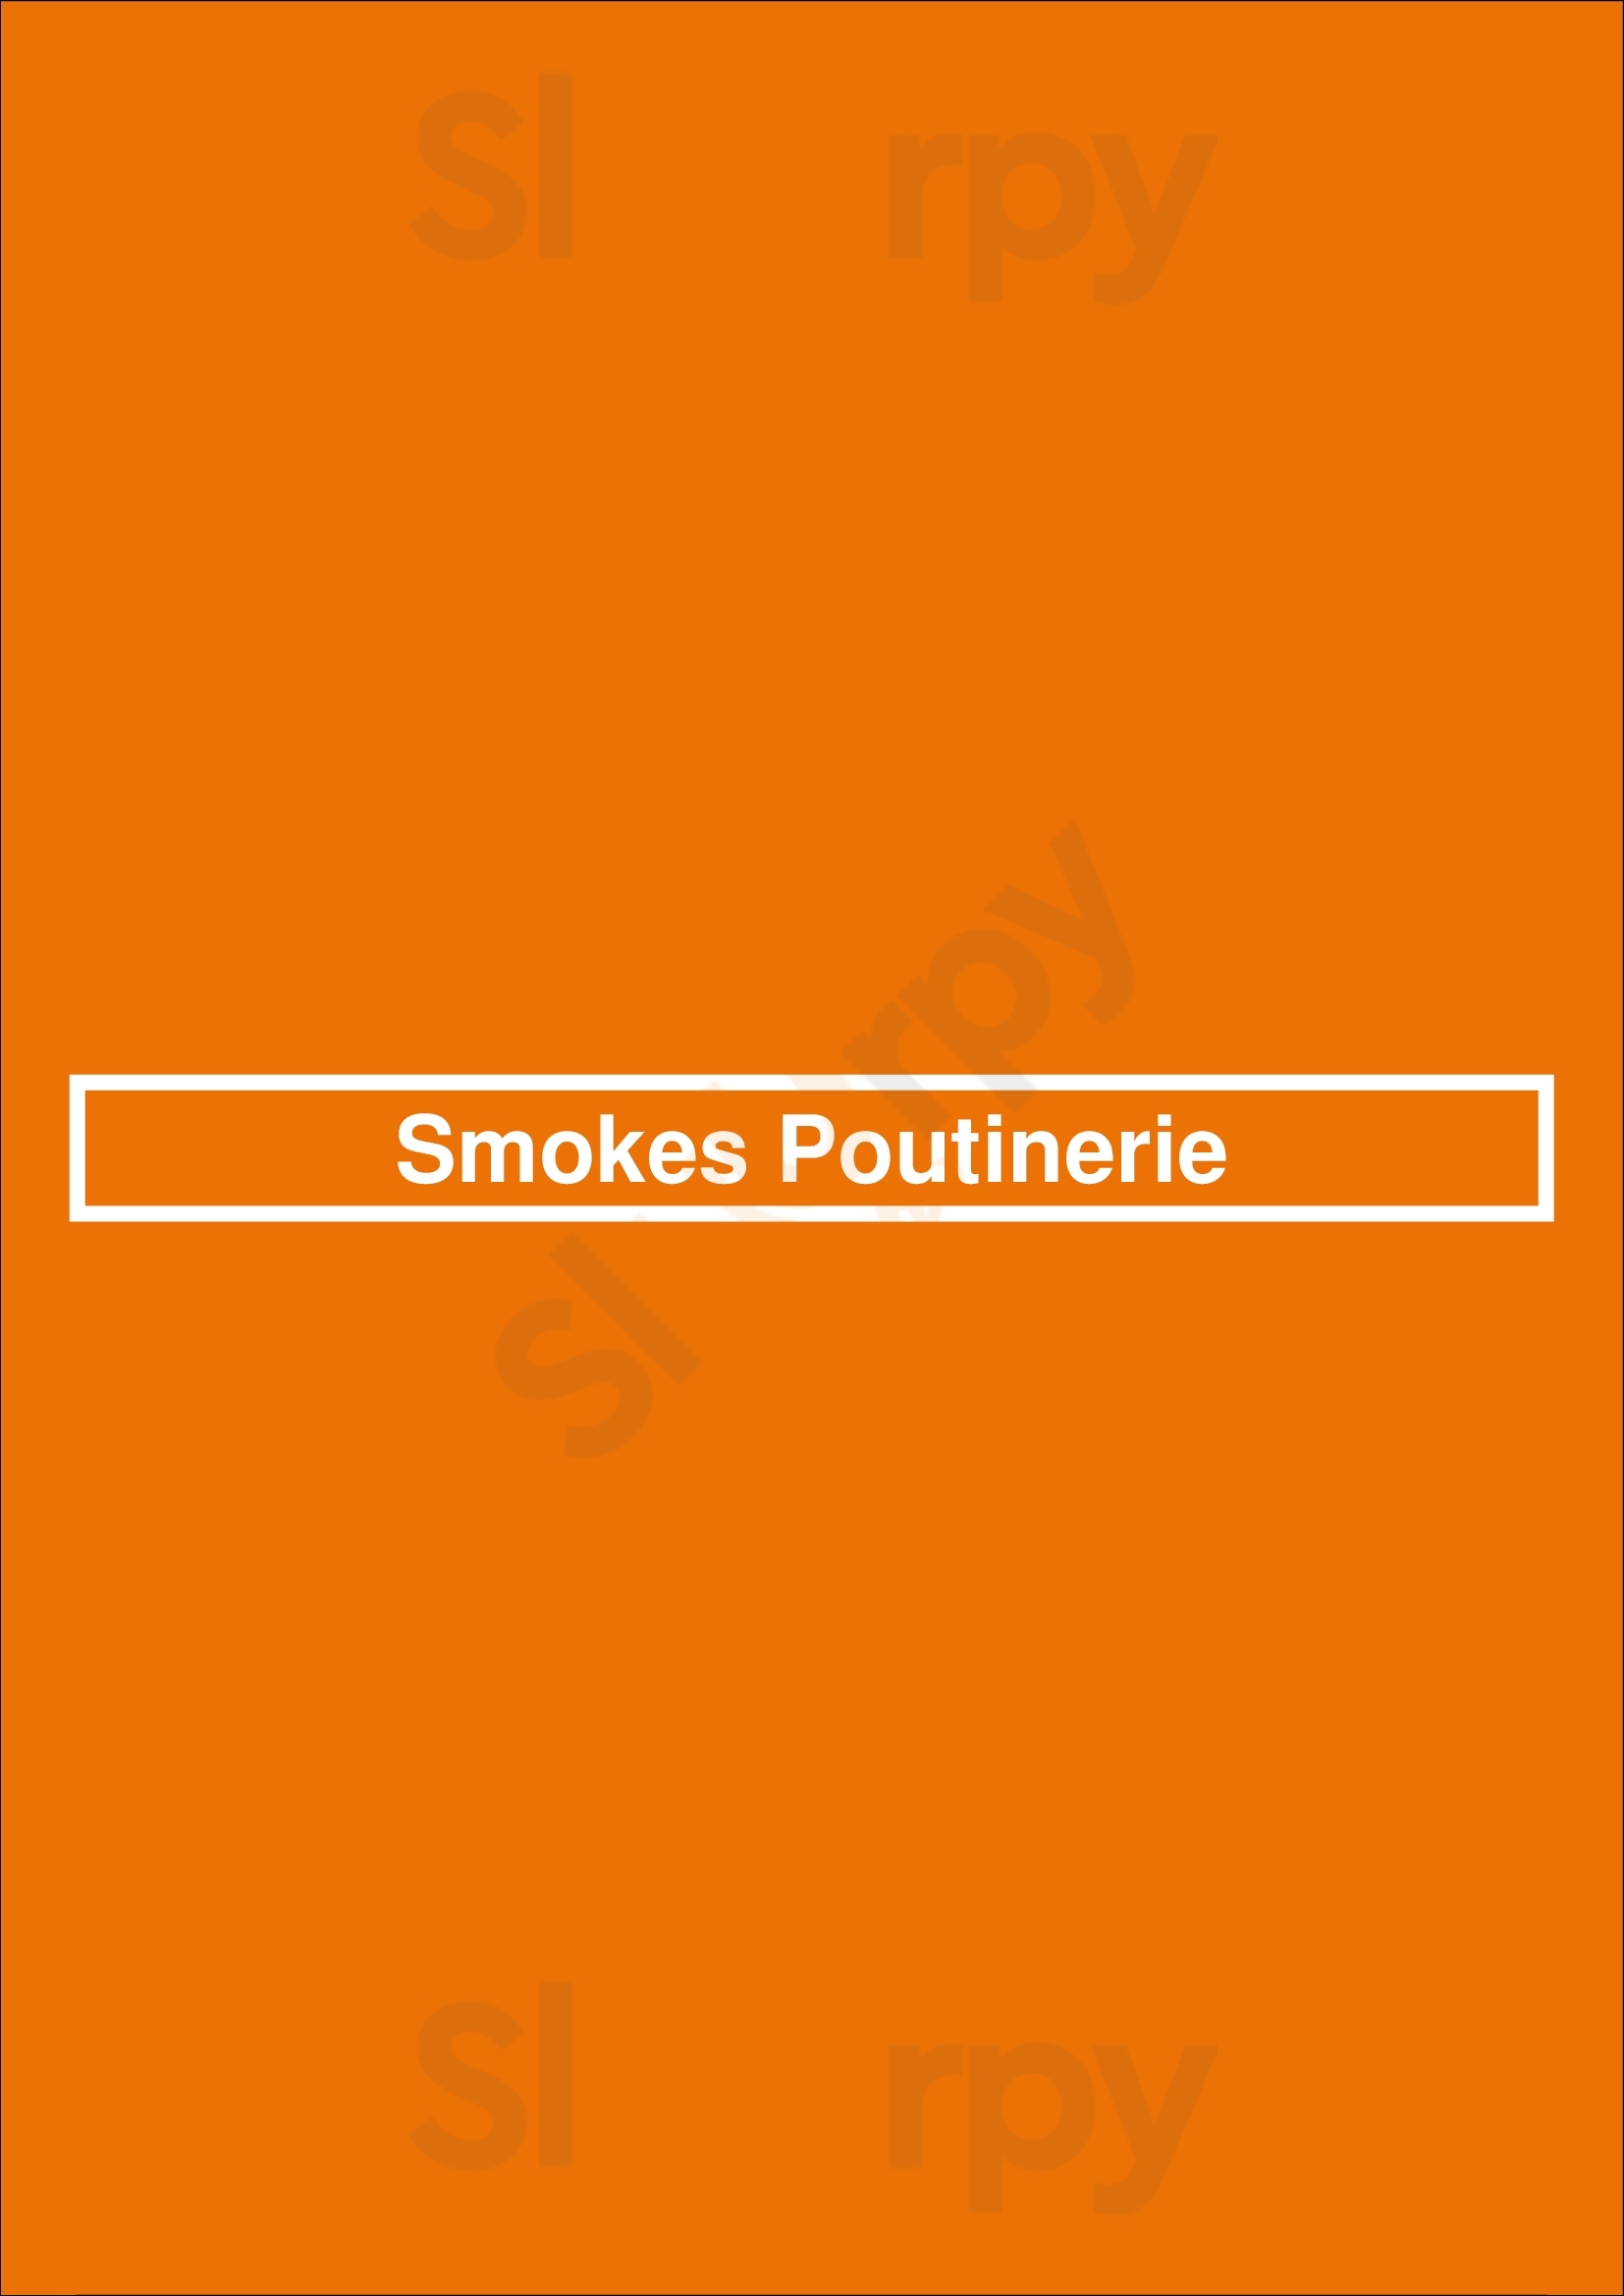 Smokes Poutinerie Hamilton Menu - 1